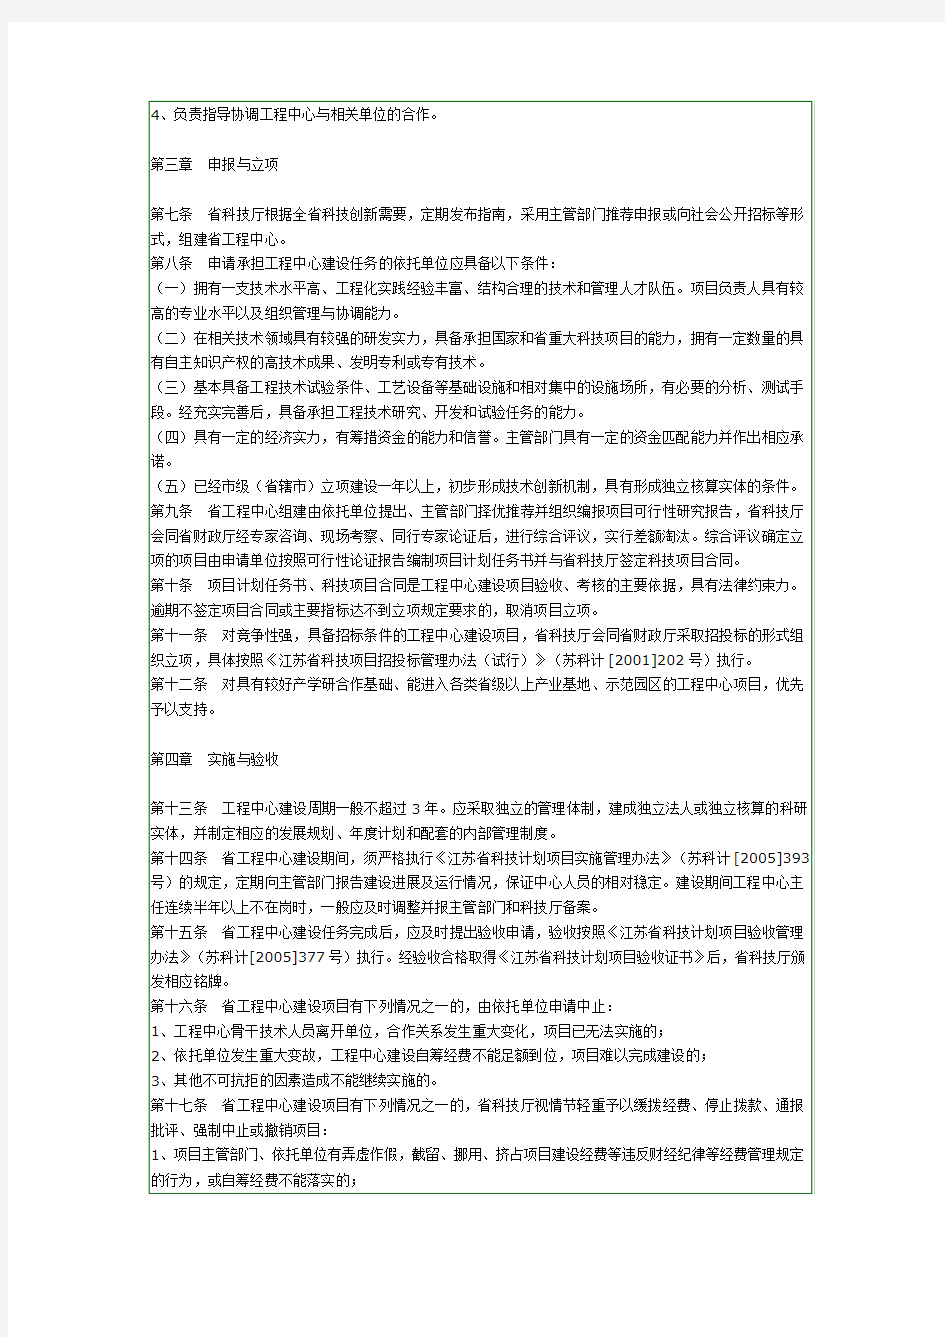 江苏省工程技术研究中心管理办法